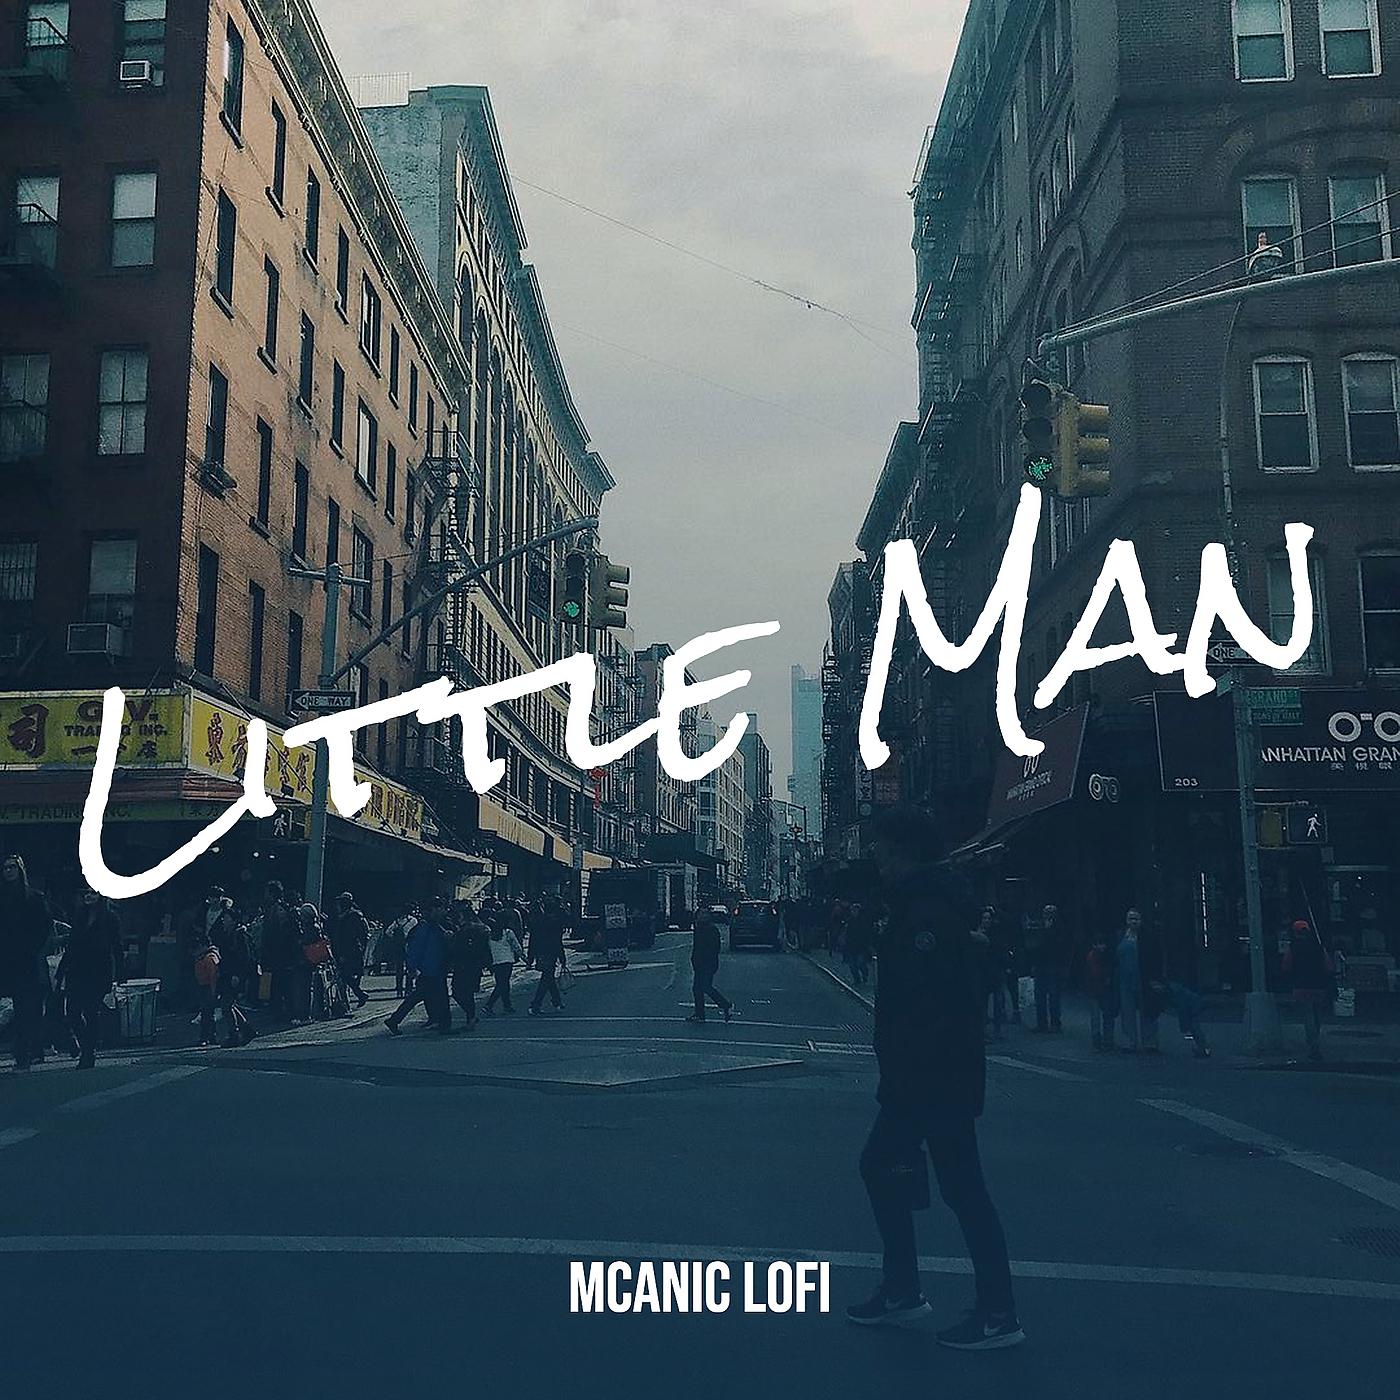 Постер альбома Little Man